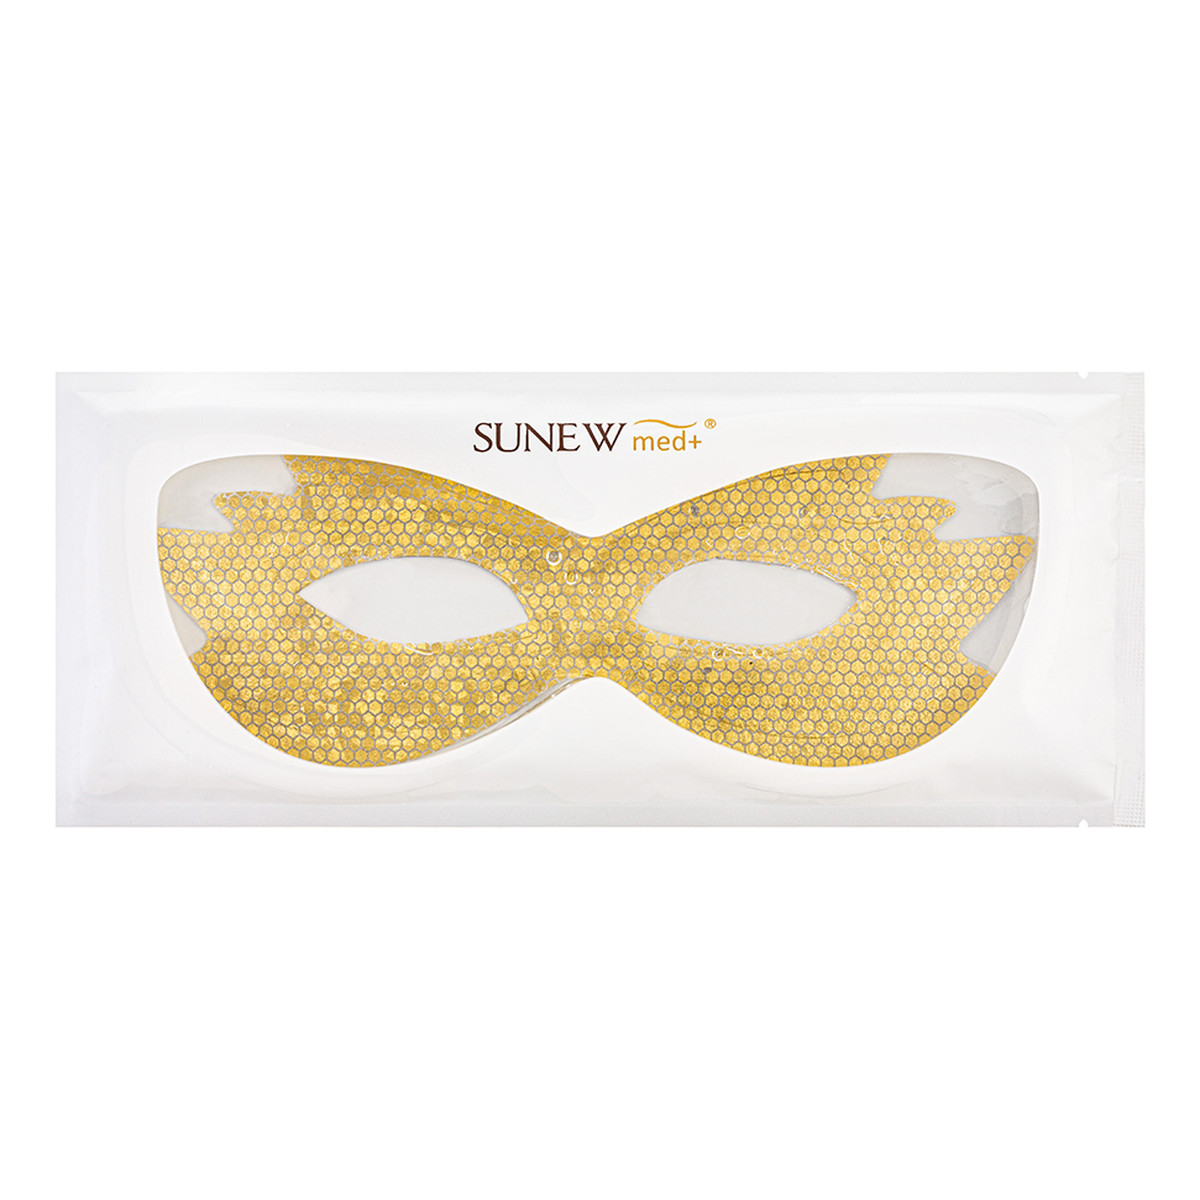 SunewMed+ Active petal mask aktywna maska płatkowa 1szt